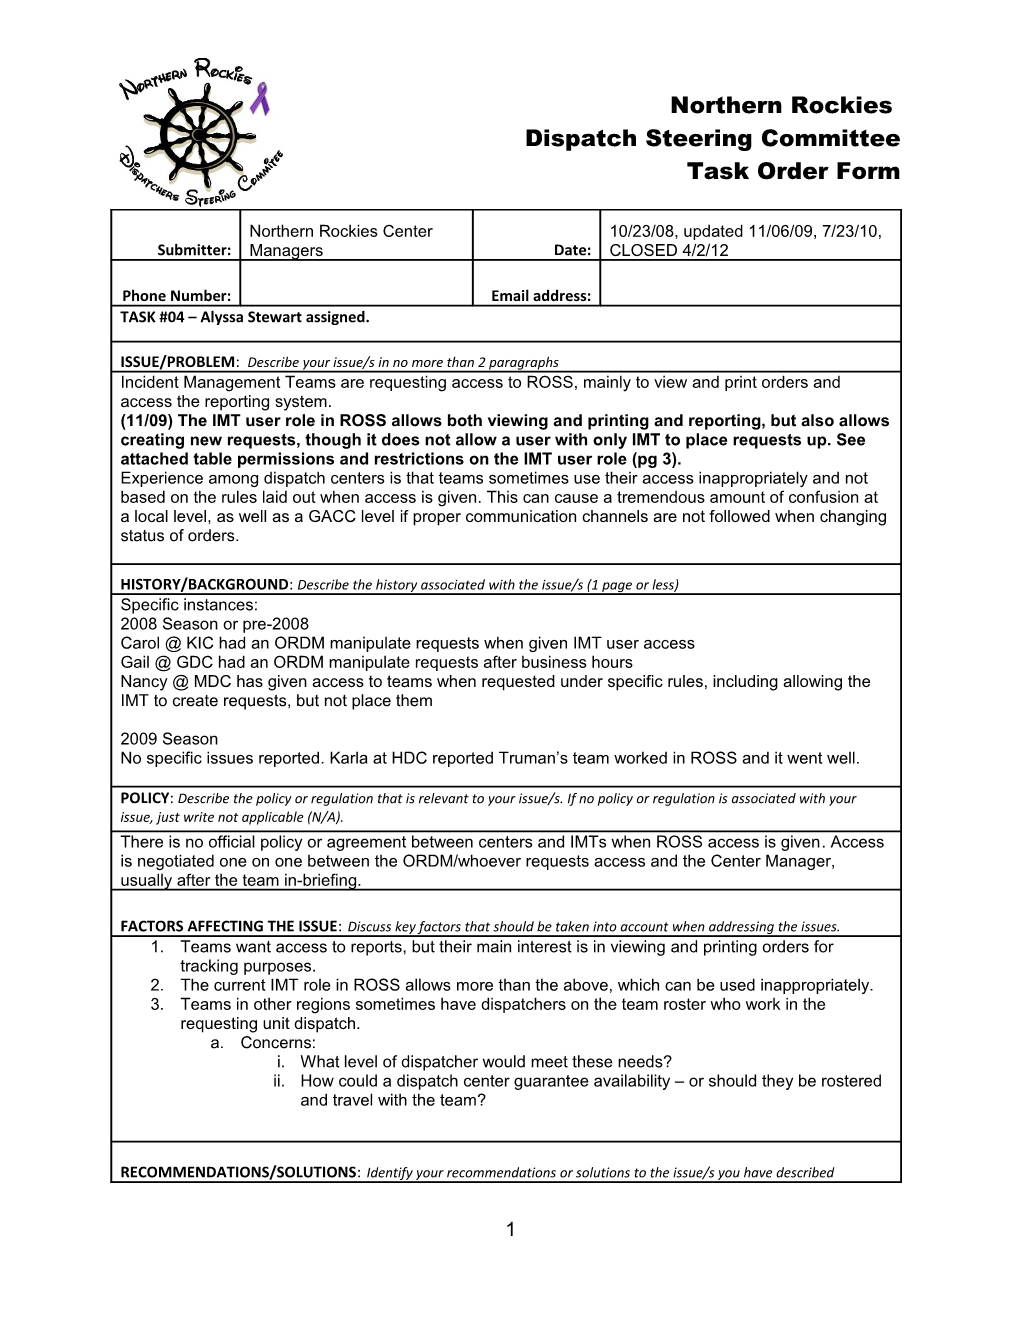 Northern Rockies Dispatch Steering Committee Task Order Form